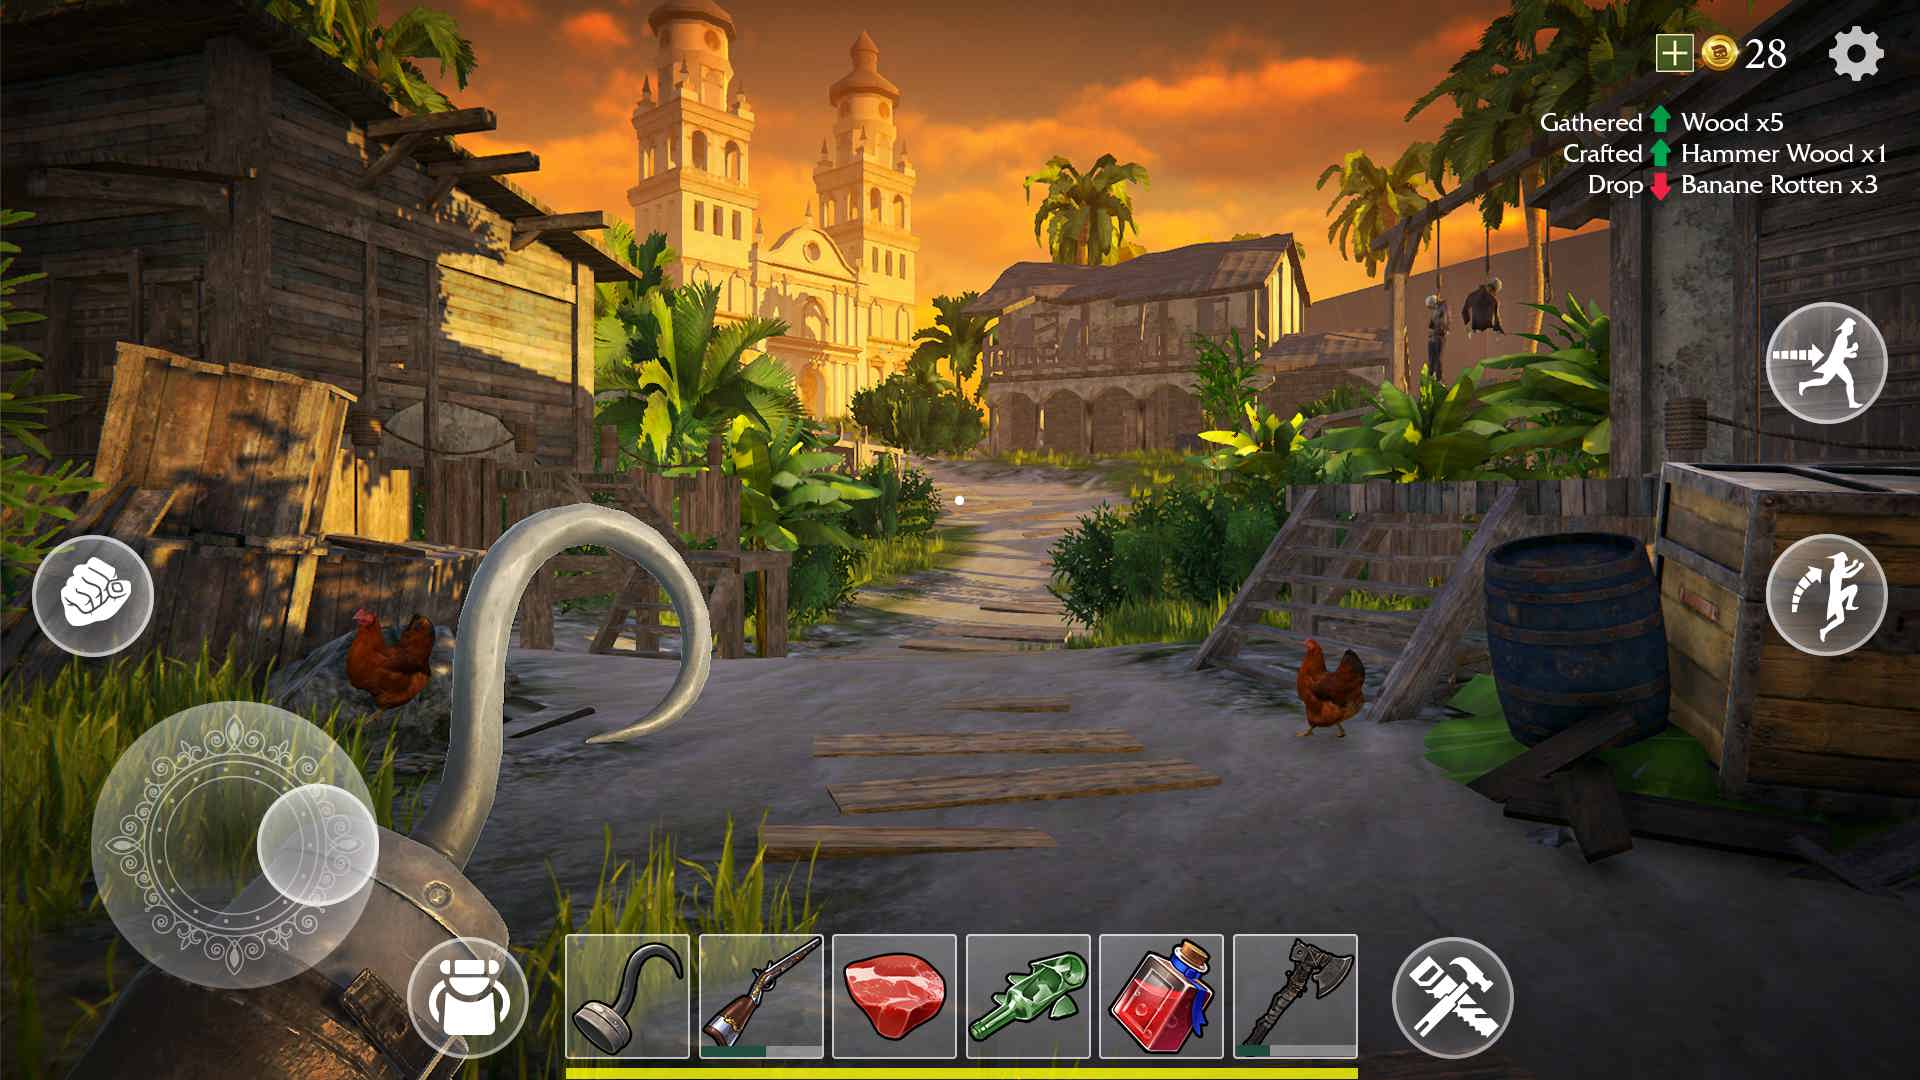 دانلود Last Pirate: Island Survival 1.9.1 – بازی ماجراجویی بقا در جزیره اندروید